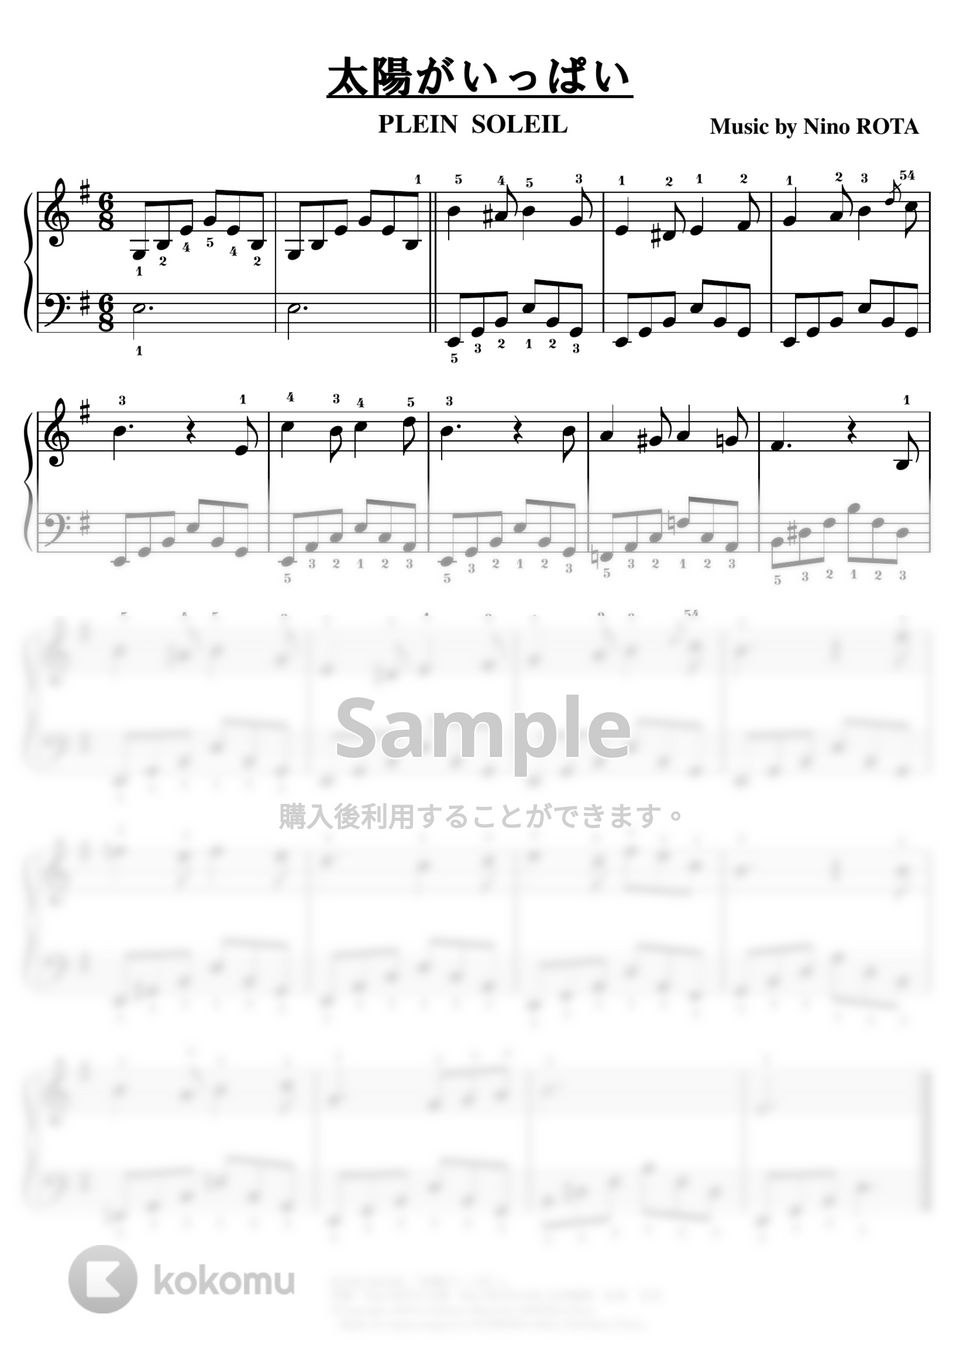 ニーノ・ロータ - 【初級】太陽がいっぱい/Plein Soleil by ピアノのせんせいの楽譜集